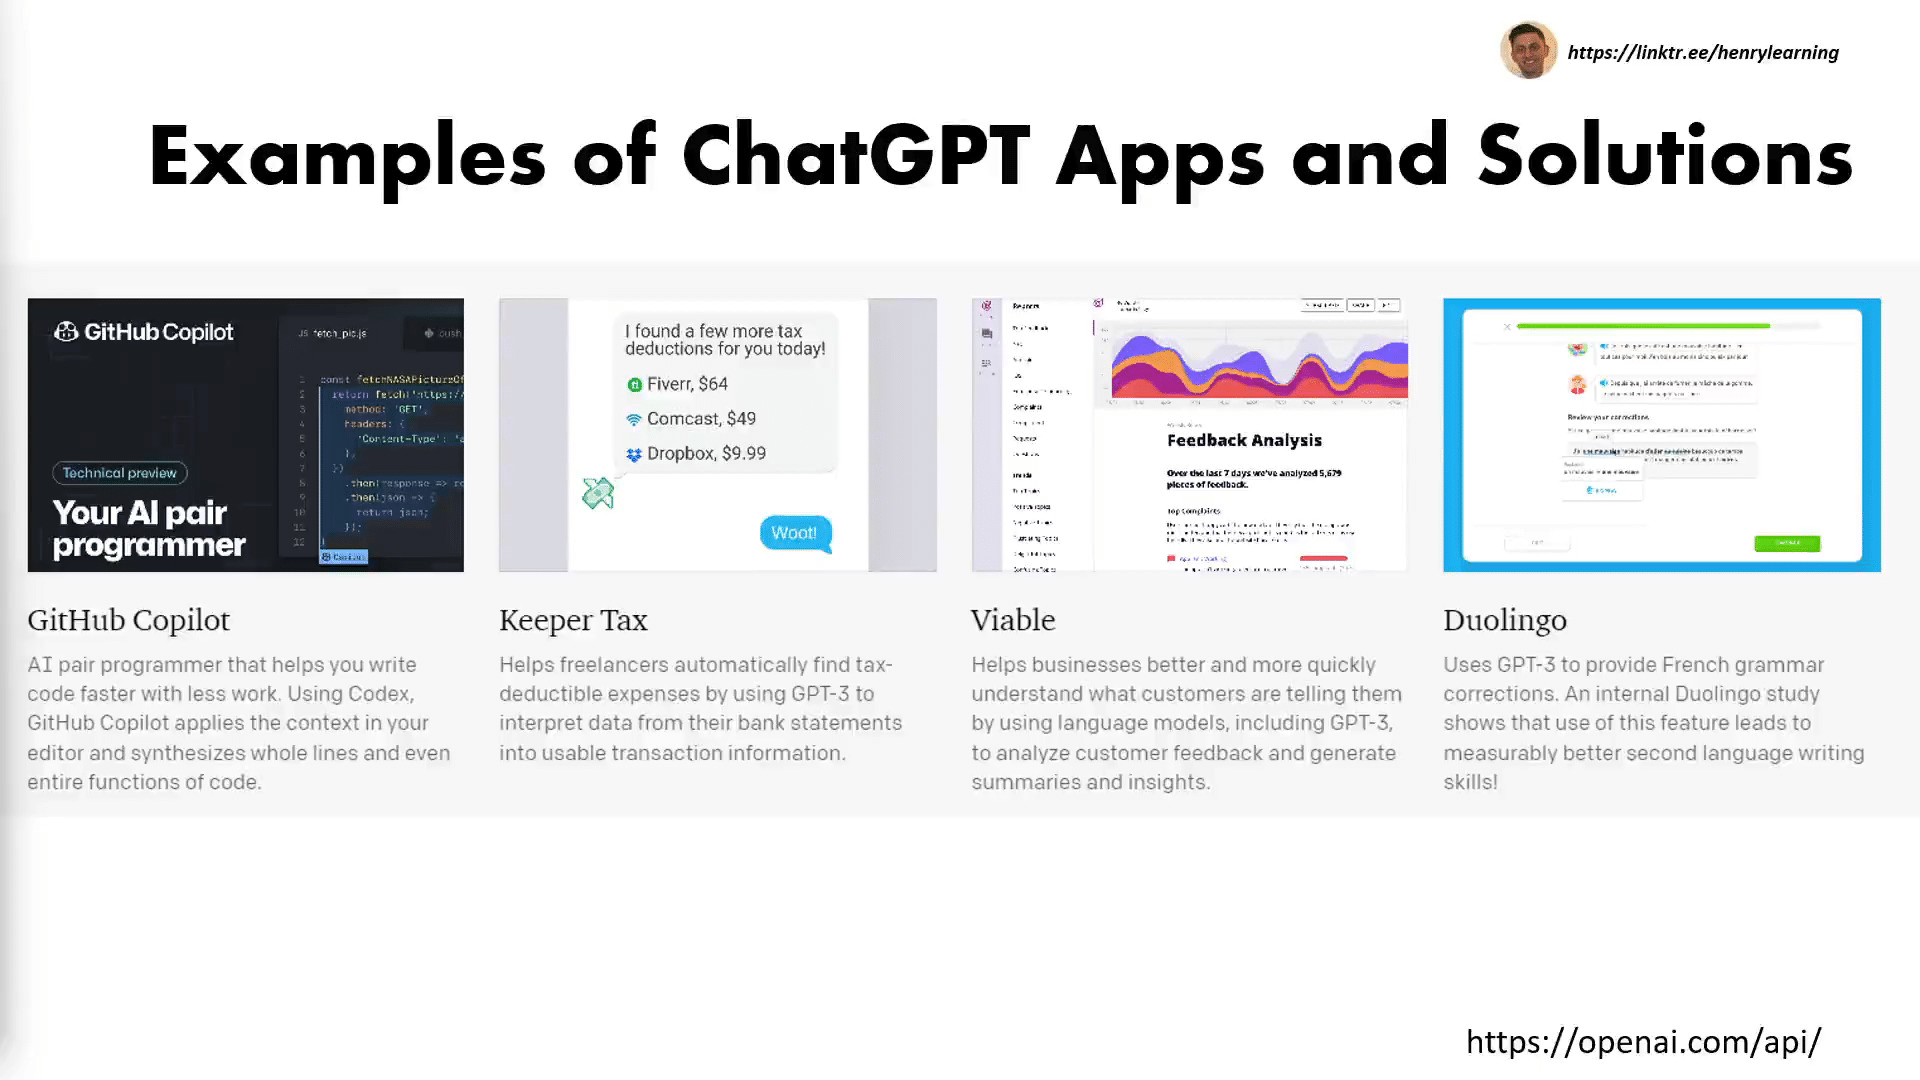 Github Copilot, Duolingo, Pajak Penjaga, dan layak hanyalah beberapa contoh aplikasi menggunakan GPT-4